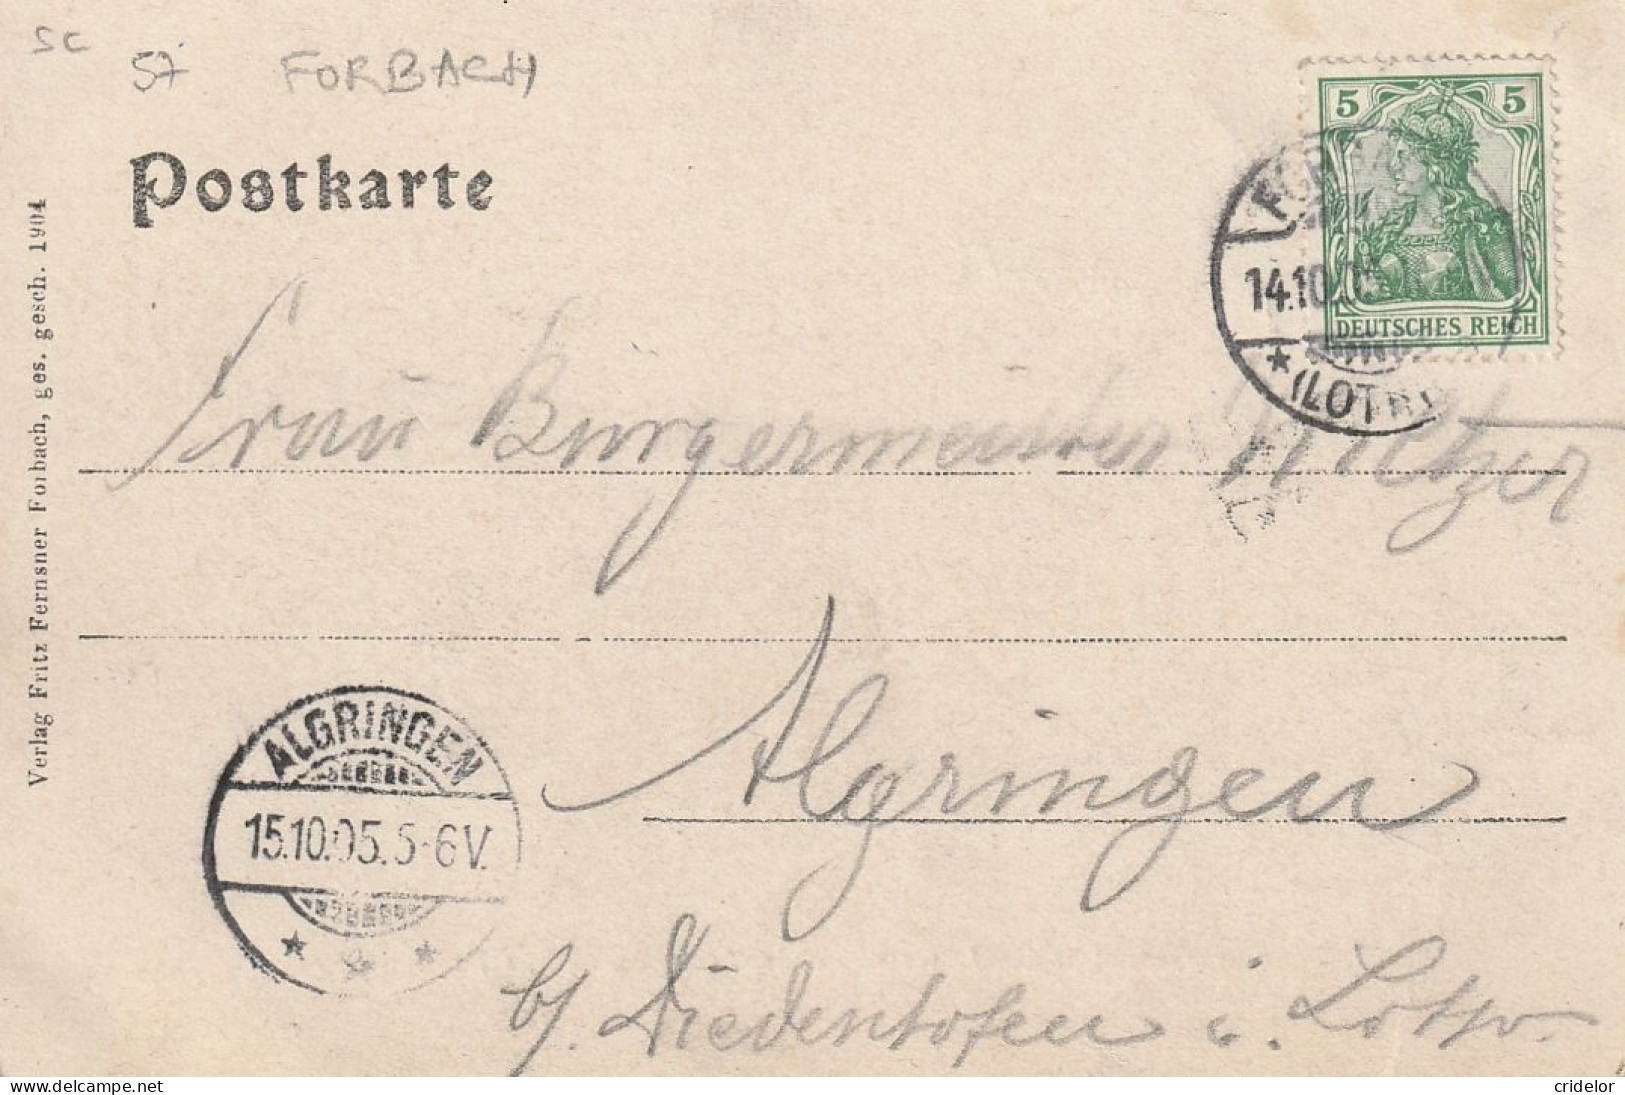 57 - FORBACH - MILITAIRES ALLEMANDS - MESS DES OFFICIERS DU 16 EME TRAIN - BATAILLON LORRAIN - BEL AFFRANCHISSEMENT 1905 - Forbach